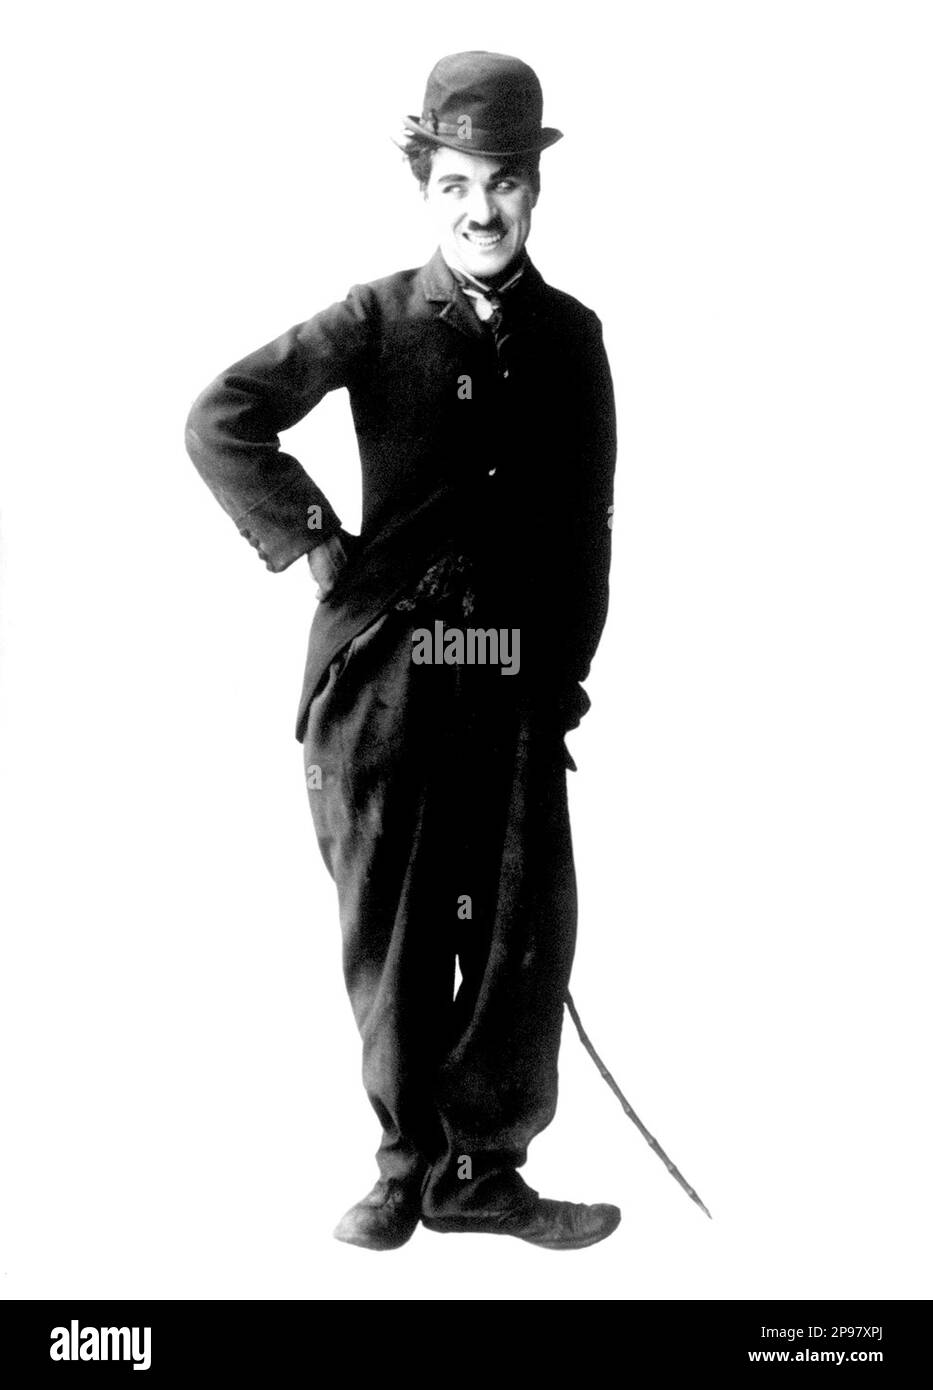 1915 : The silent movie actor and movie director CHARLES CHAPLIN ( 1889 - 1977 ) as CHARLOT - CINEMA - FILM - portrait - ritratto - hat - cappello - regista cinematografico - attore - attrice - comico - tie - cravatta - collar - colletto  ----   Archivio GBB      Archivio Stock Photo